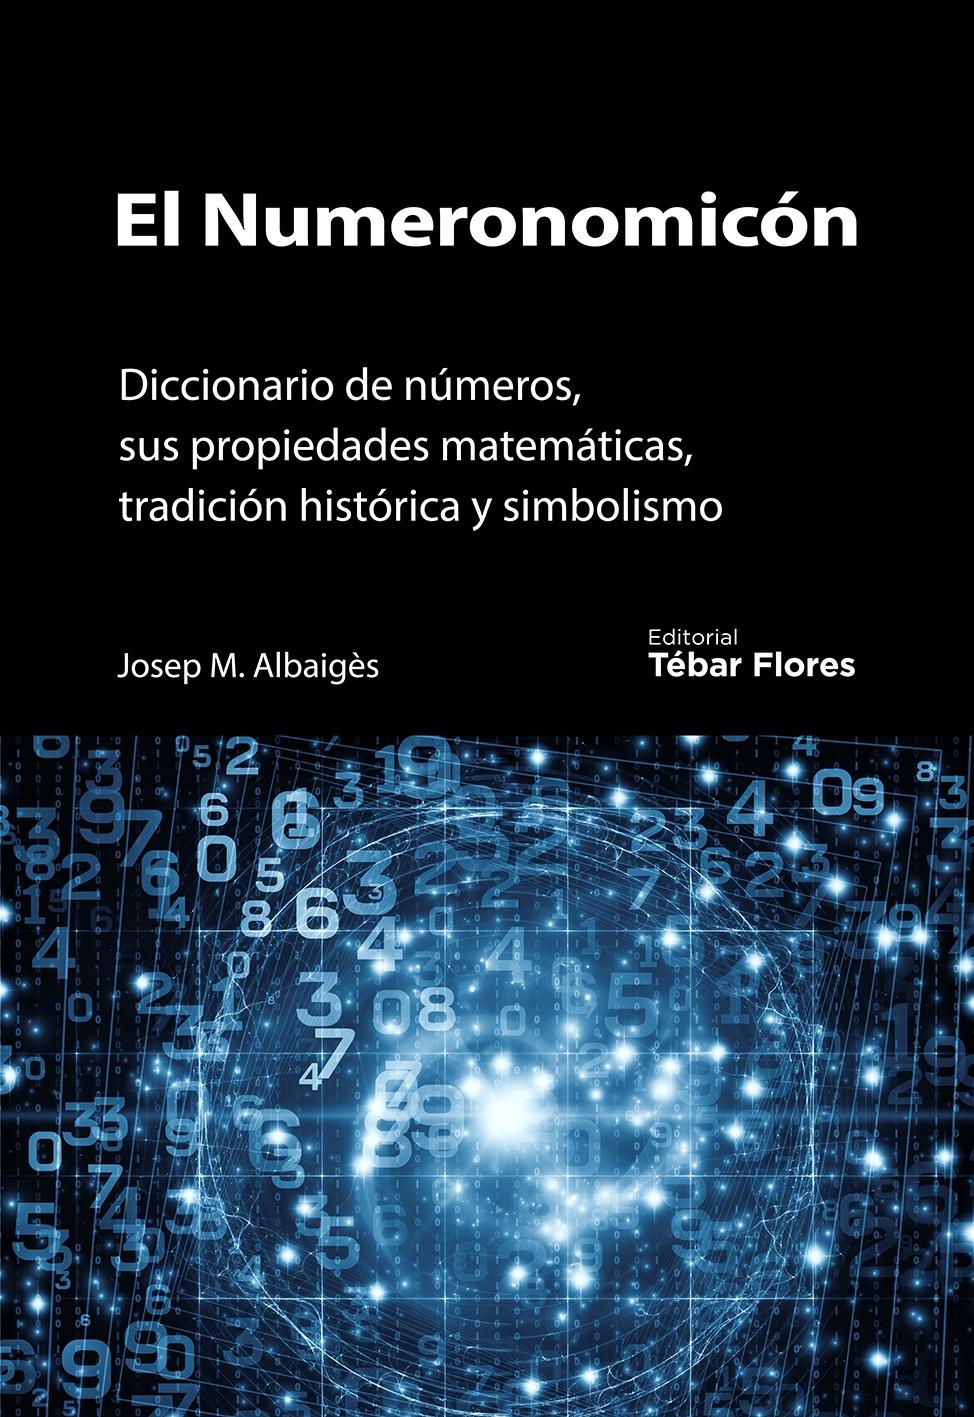 El Numeronomicón "Diccionario de números, sus propiedades matemáticas, tradición histórica y simbolismo"